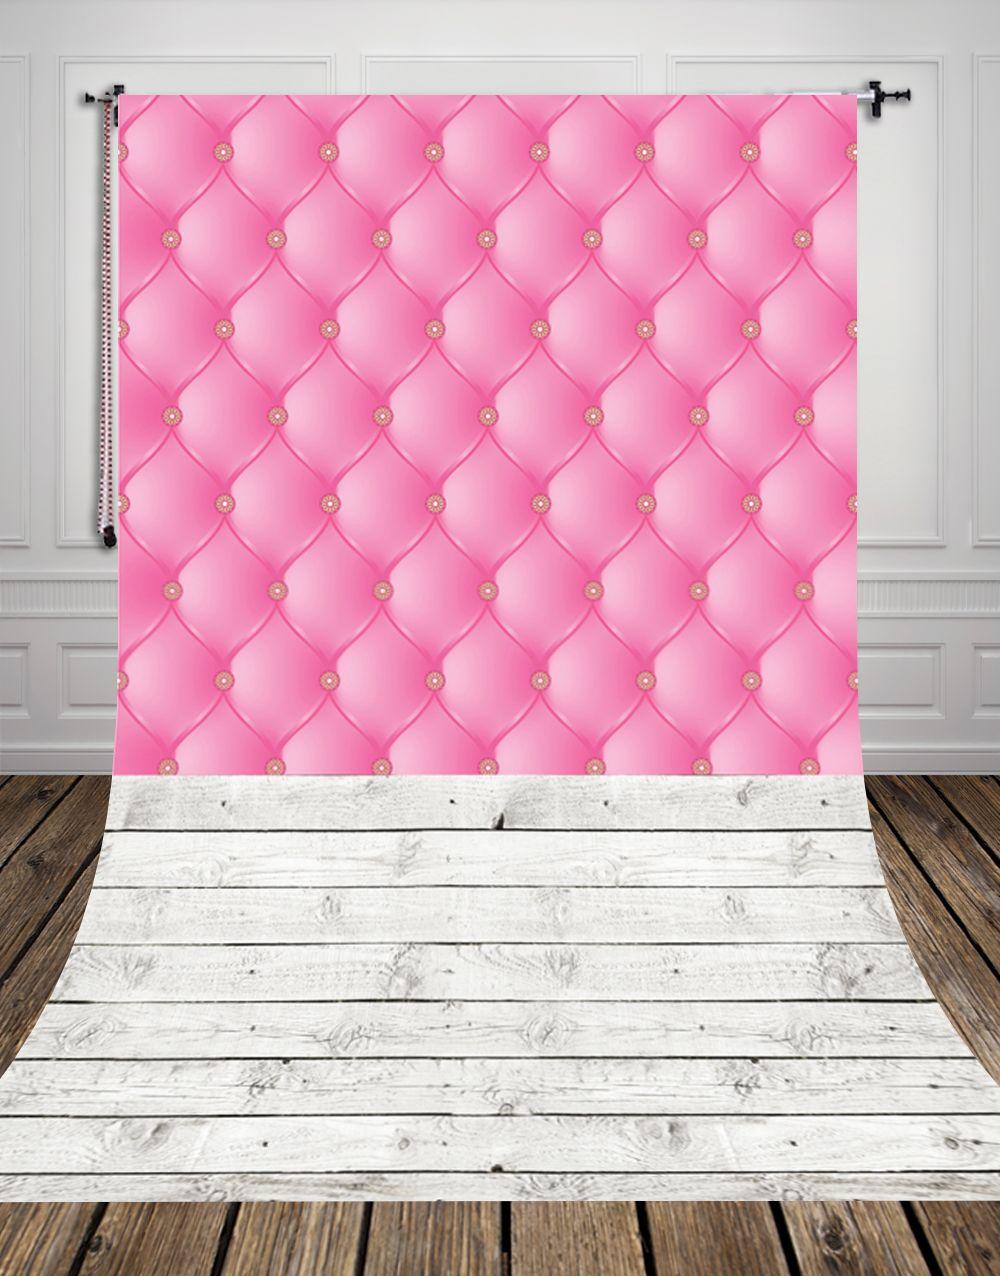 HUAYI pink bedboard backdrop girl baby photography princess photo